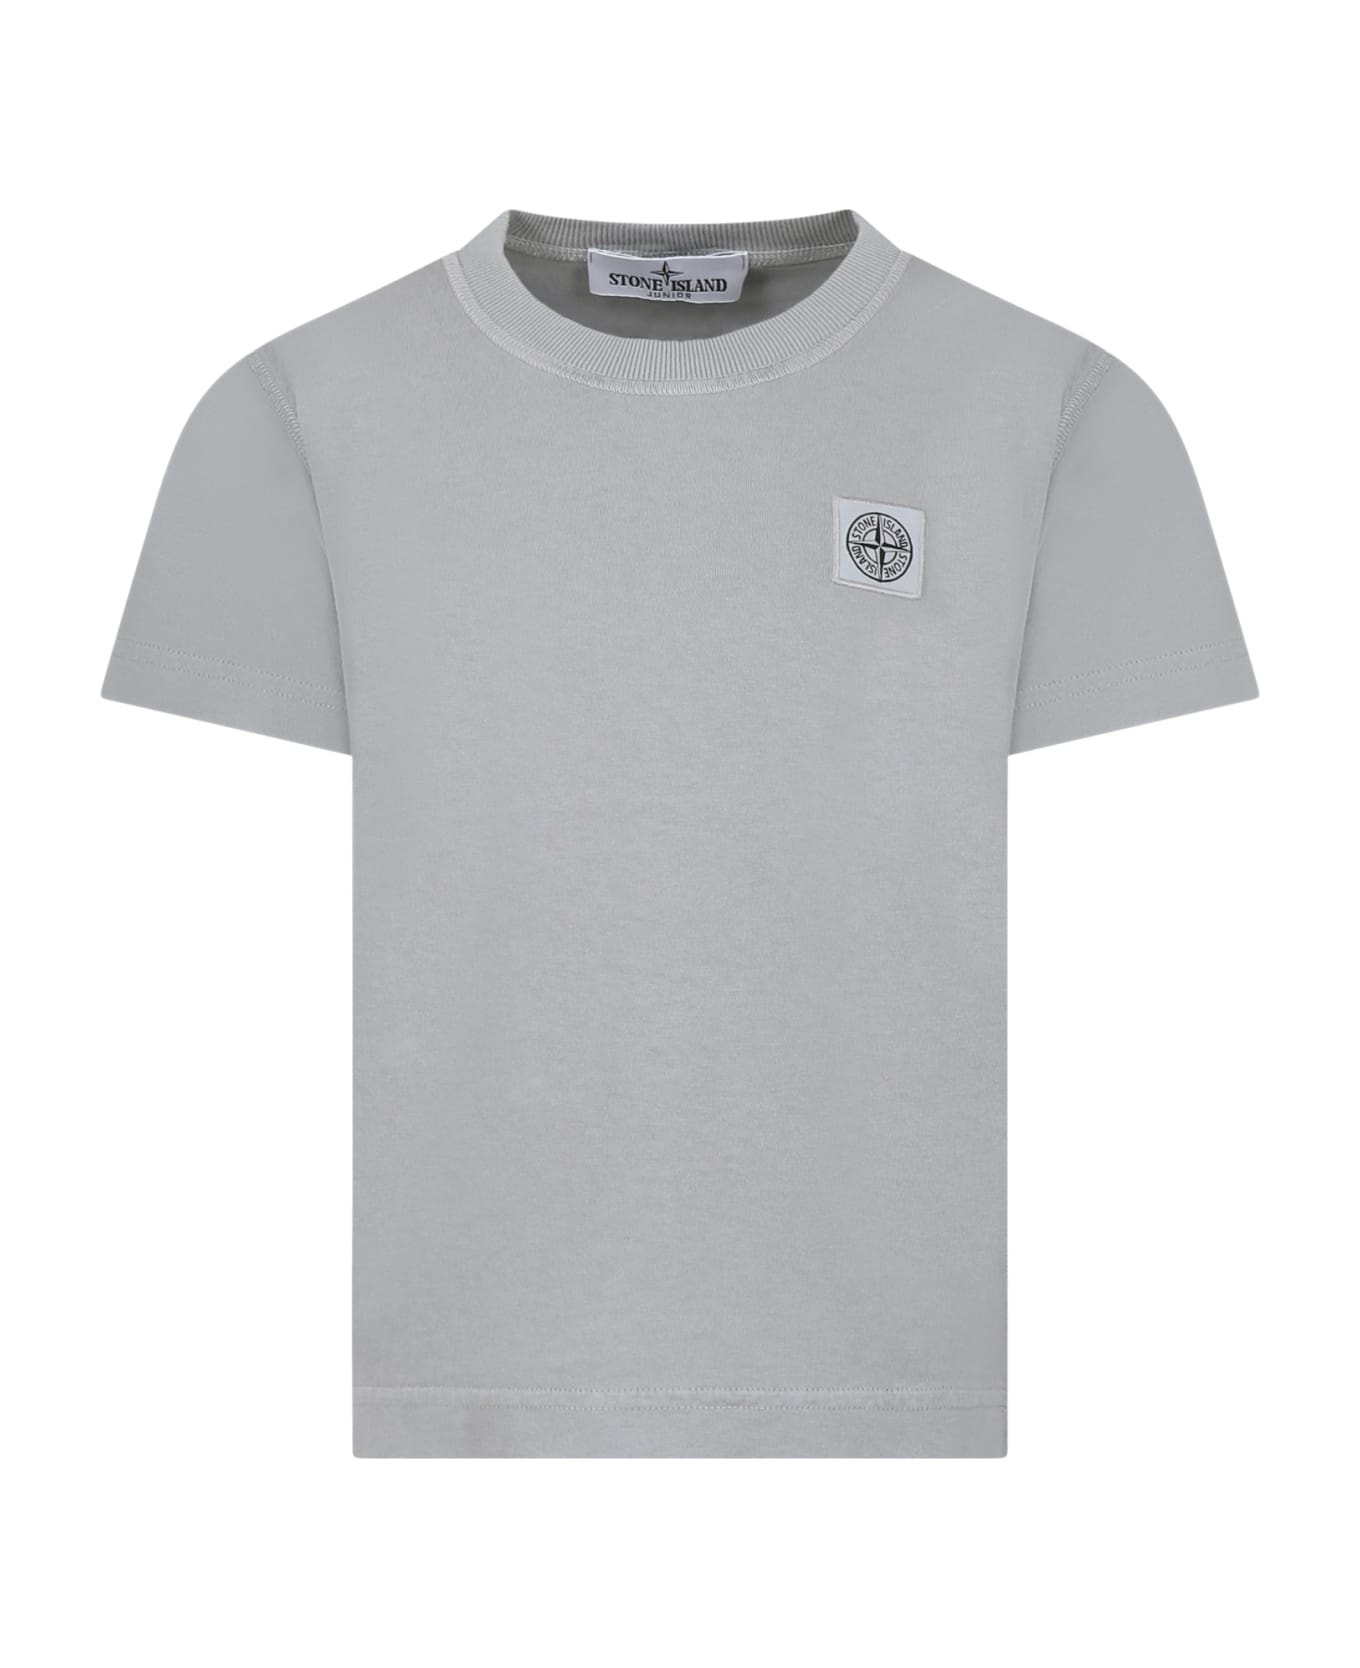 Stone Island Junior Grey T-shirt For Boy With Logo - Pearl grey